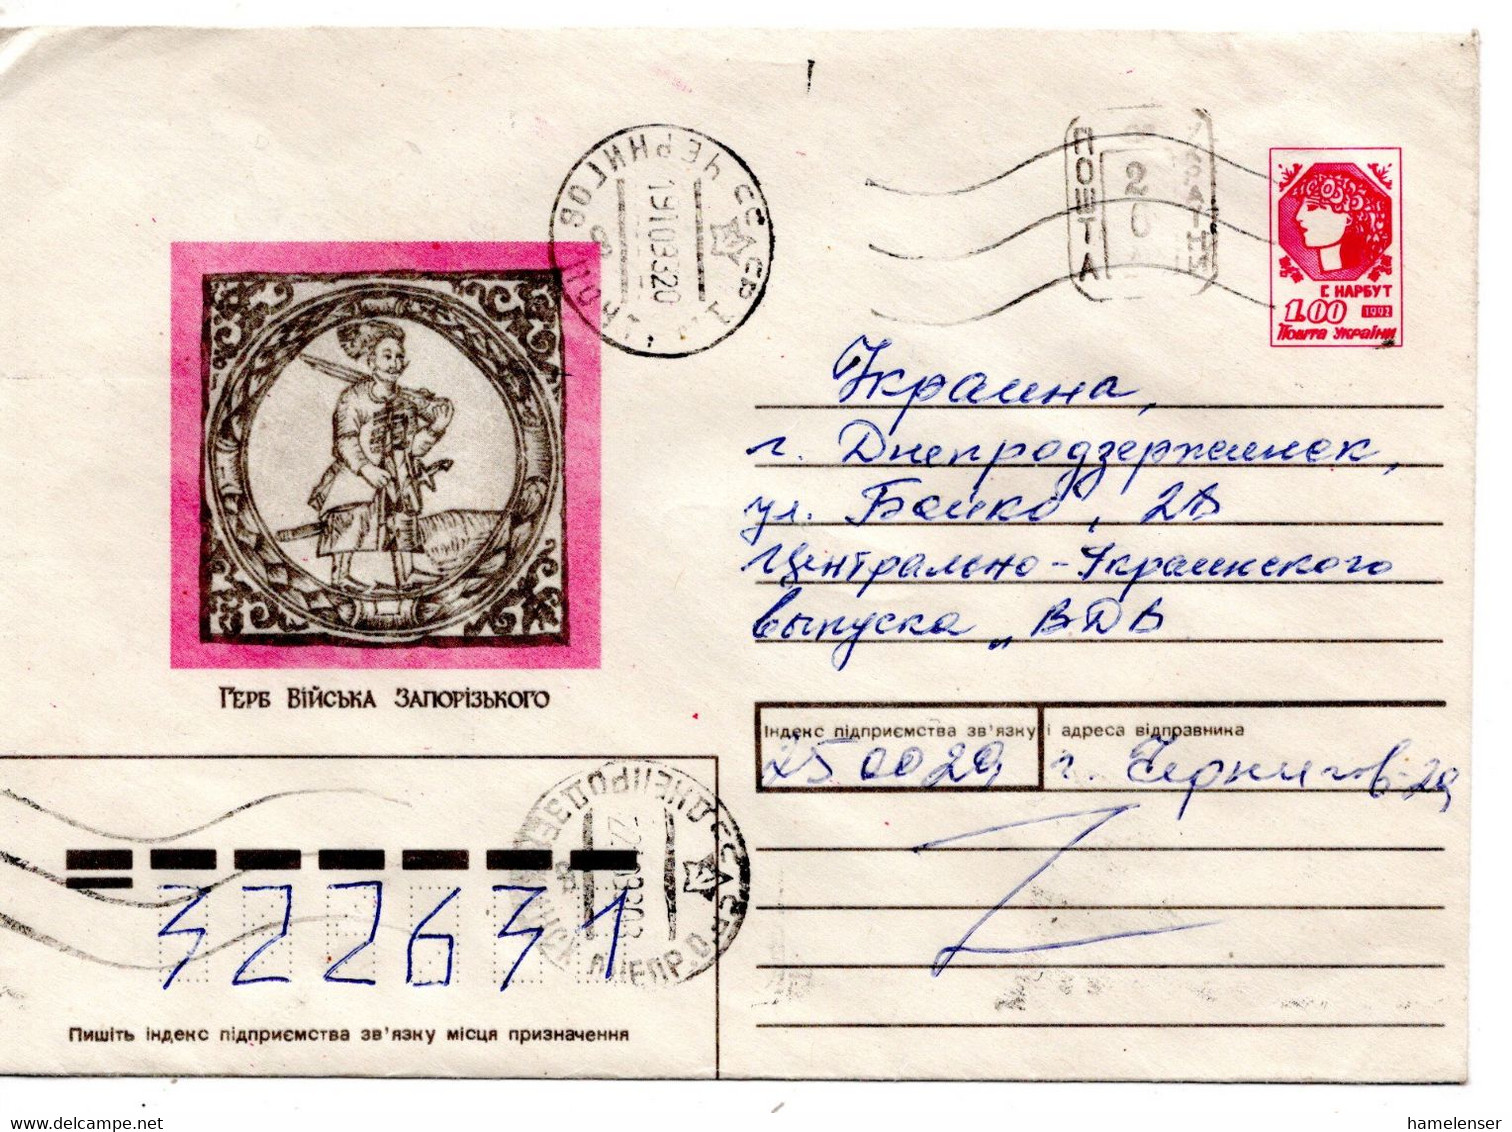 63866 - Ukraine - 1993 - 1Krb GAUmschlag "Geschichte" M Handstpl-Zudruck CHERNIGOV -> DNEPRODZERZHINSK - Ucraina